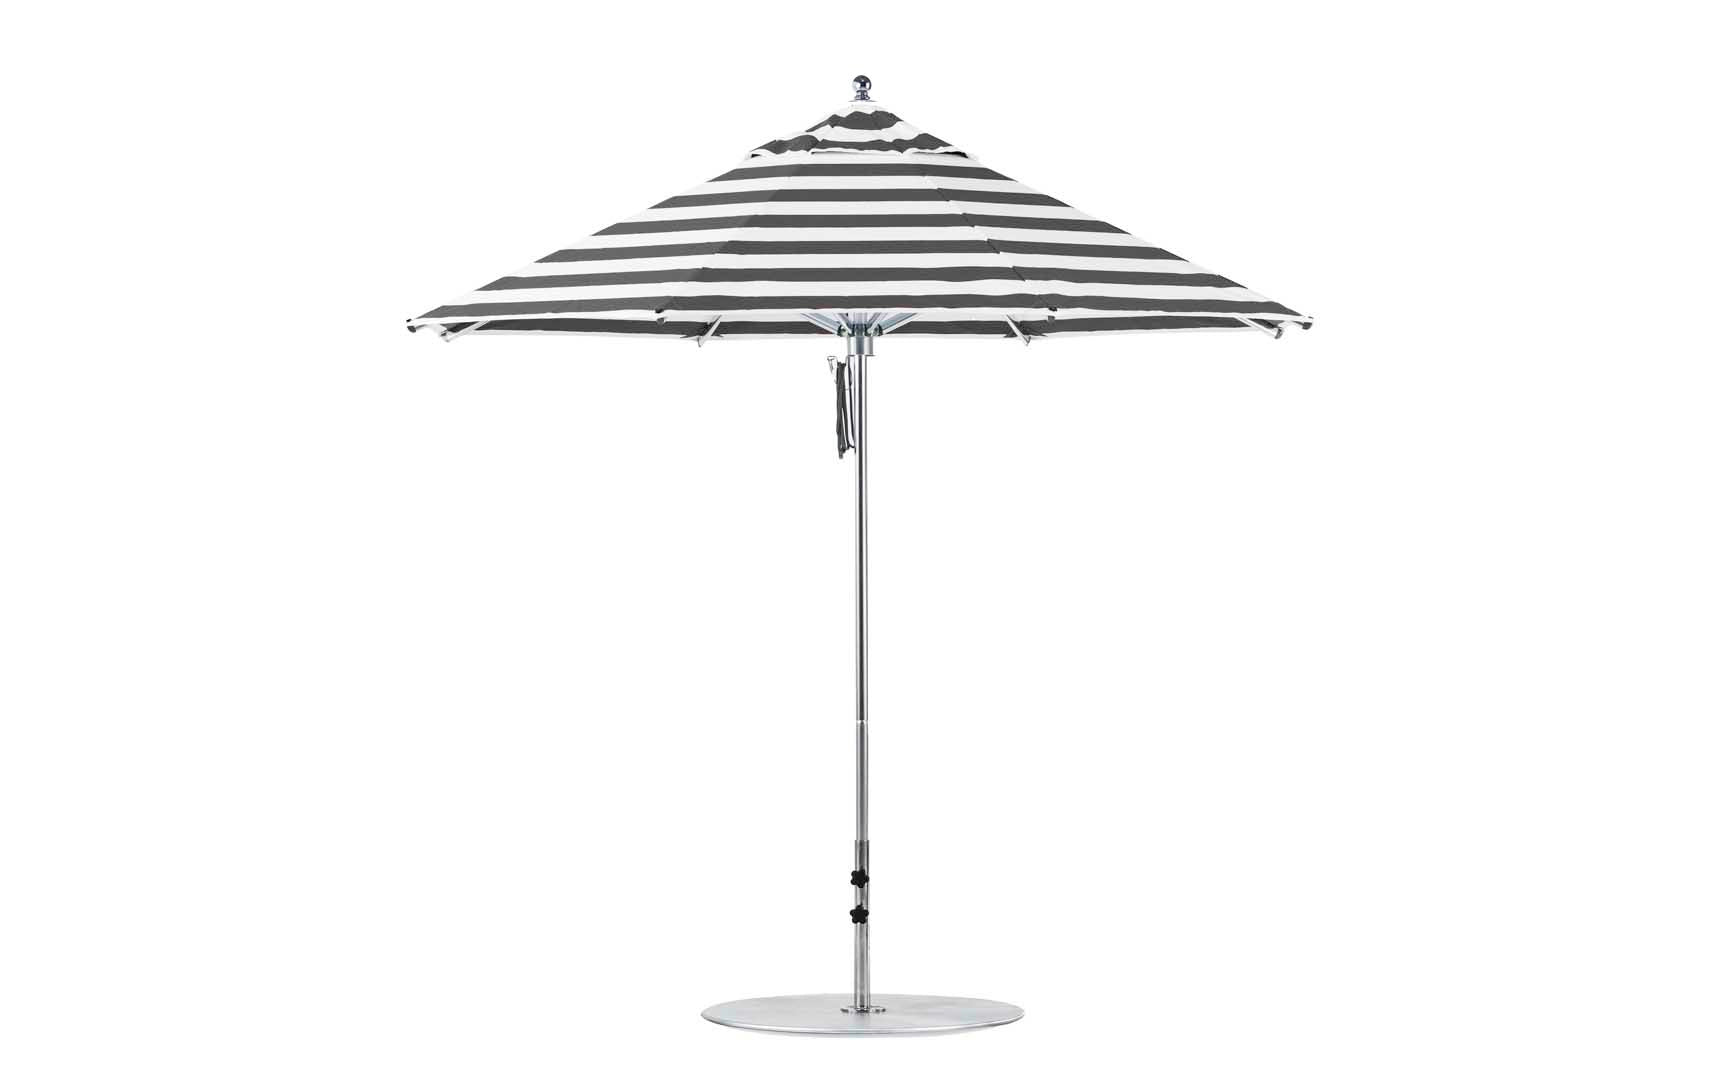 Premier Aluminum Umbrella - 9' Octagon Pulley